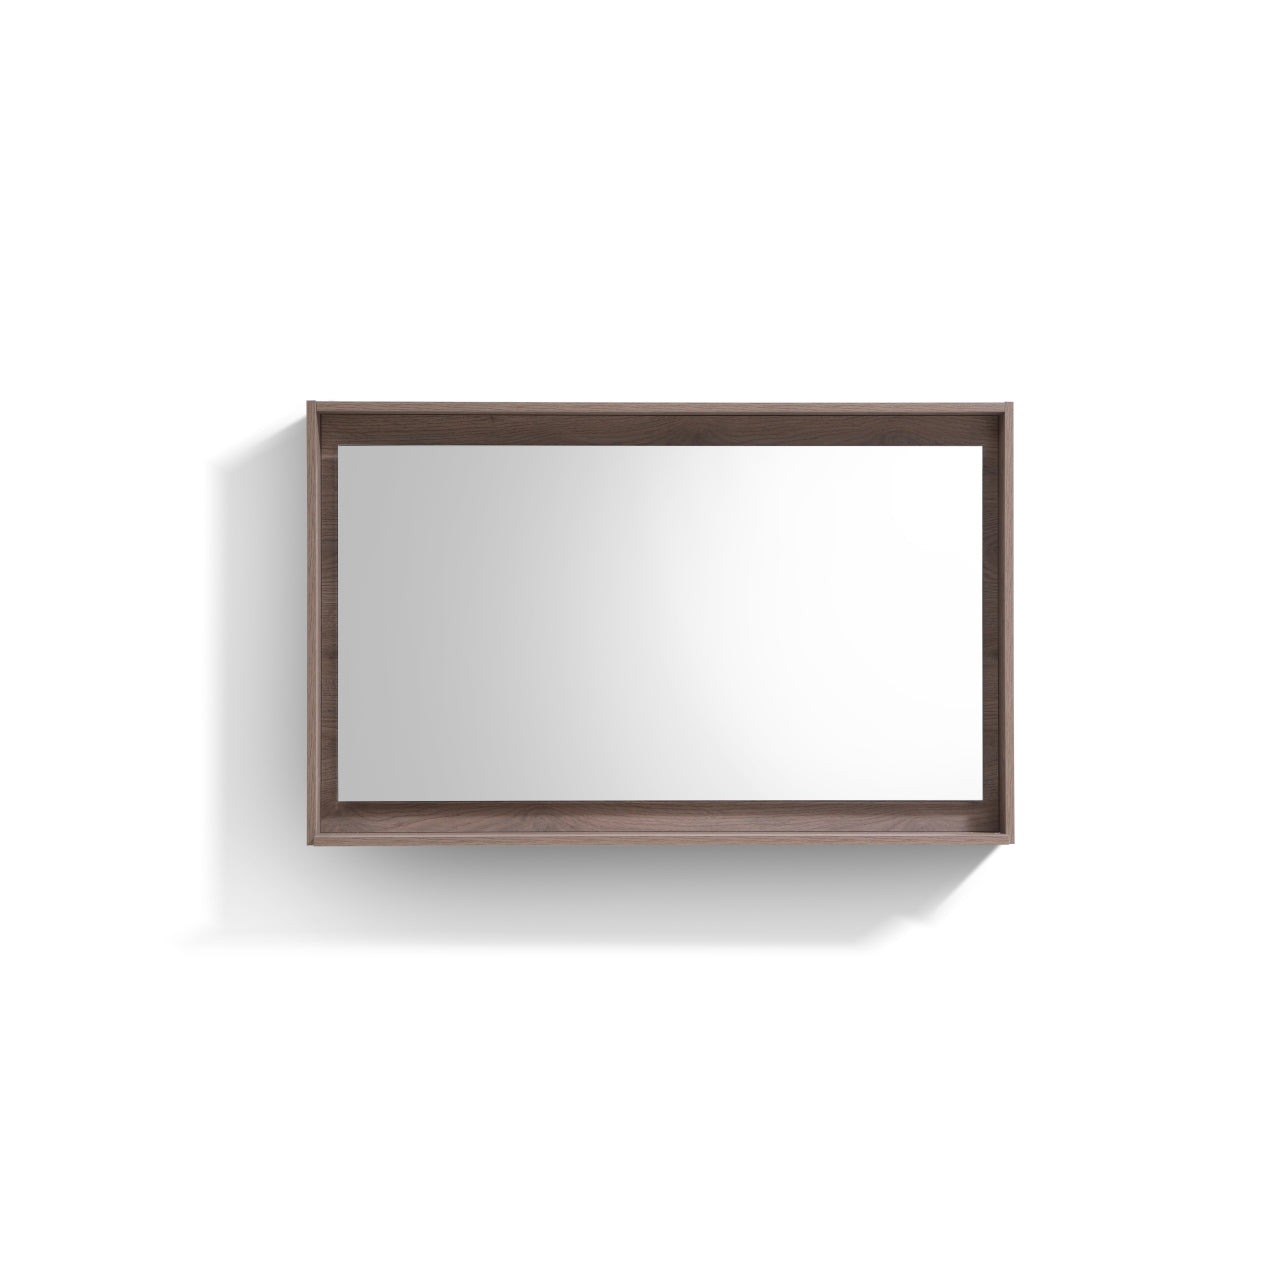 Bosco 48" Framed Mirror With Shelve - Bhdepot 